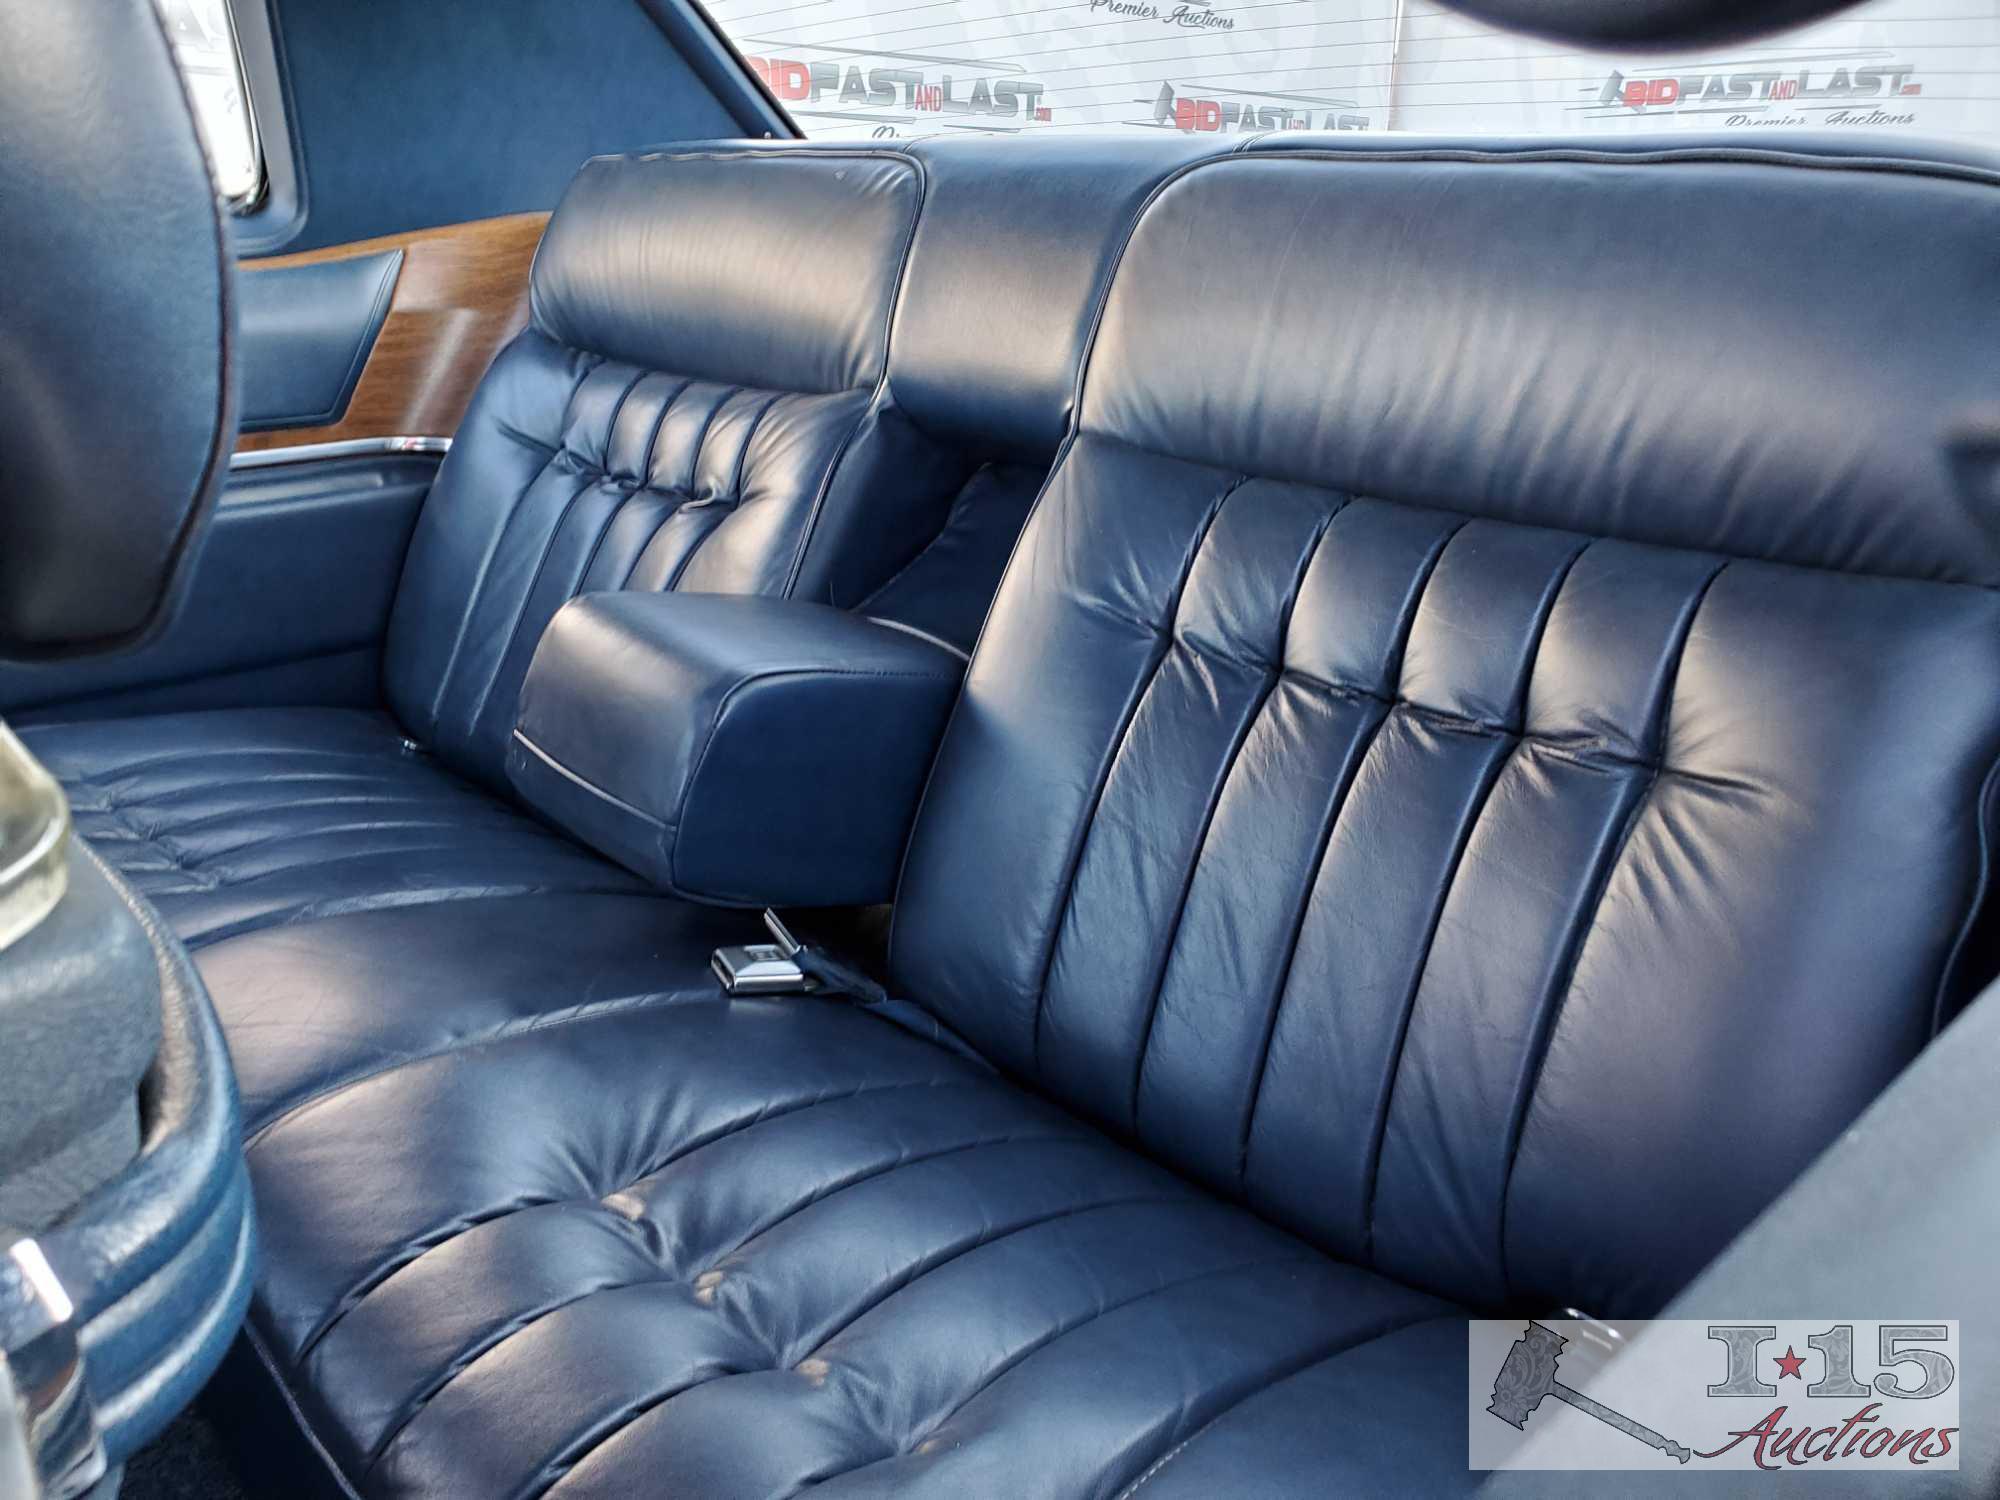 1974 Cadillac Coupe DeVille, Blue